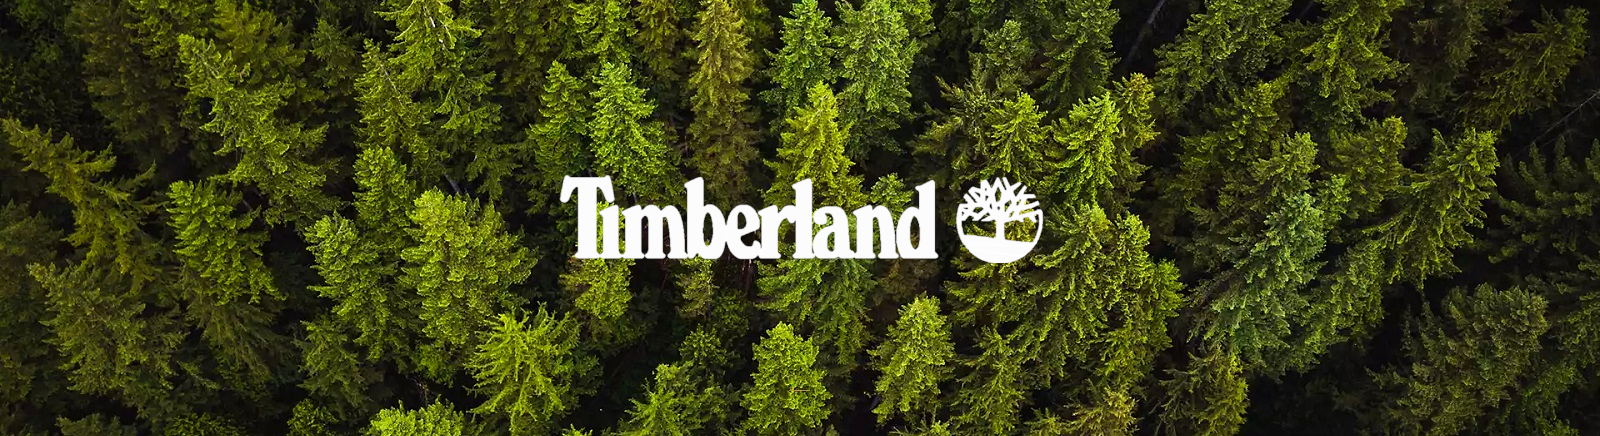 Timberland Herrenschuhe online kaufen im Prange Schuhe Shop